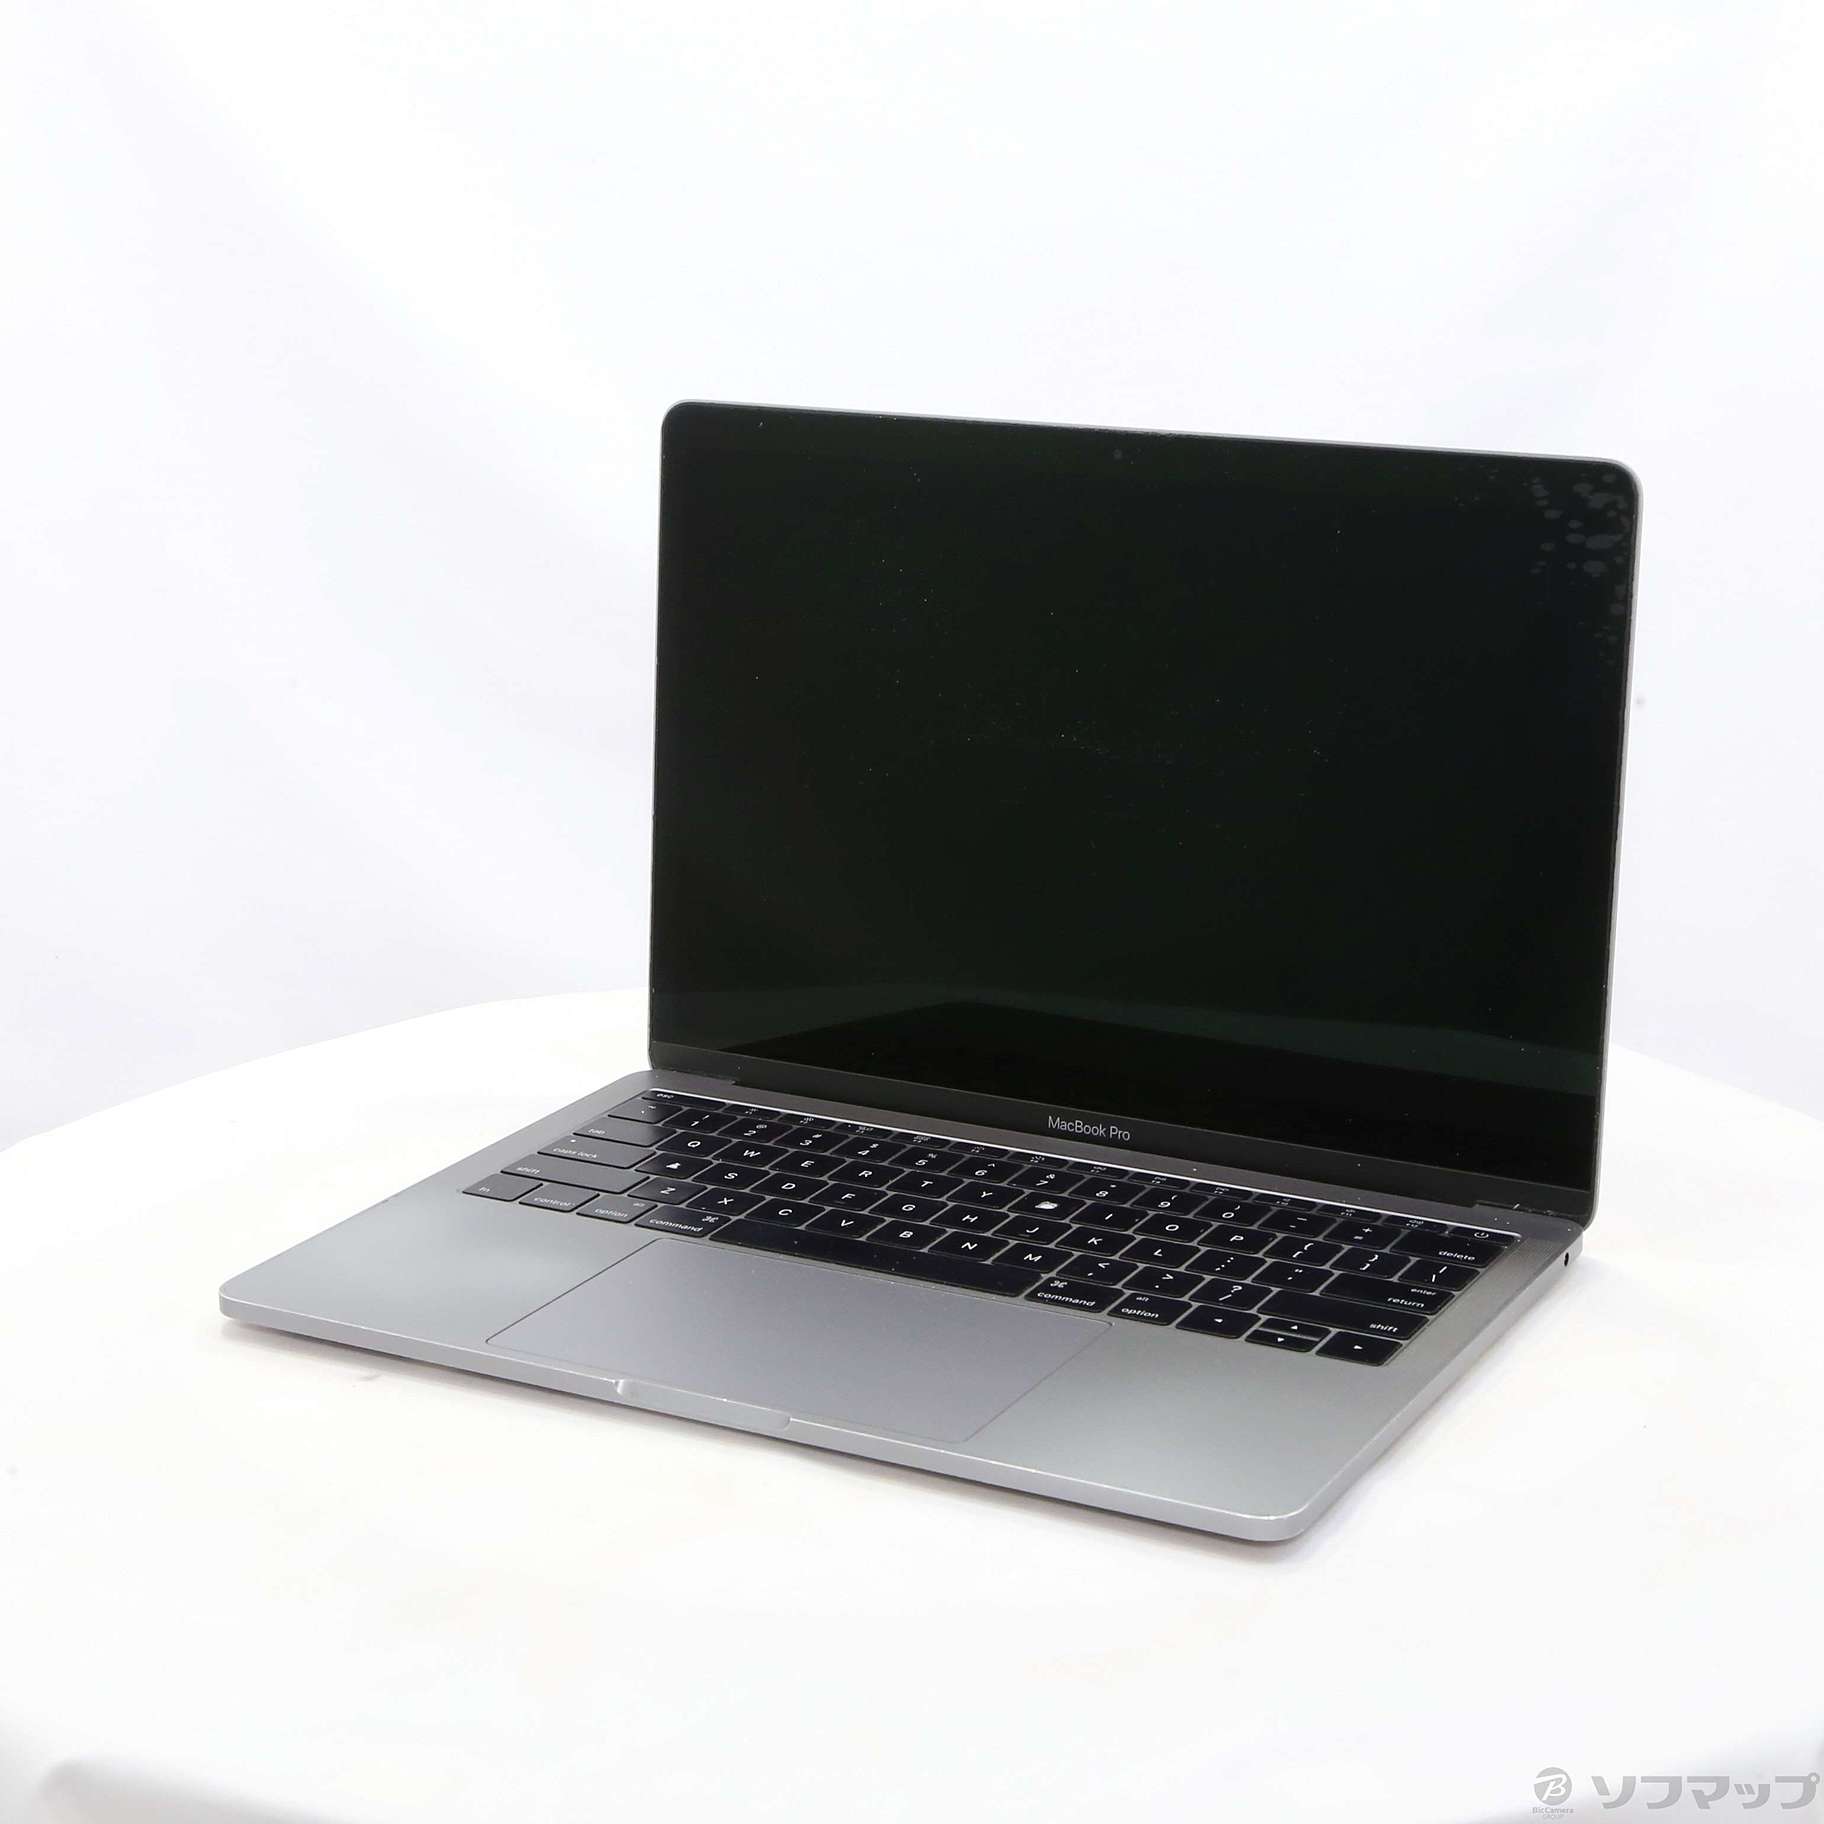 MacBook Pro 256GB 13インチ 美品 MLL42J/A